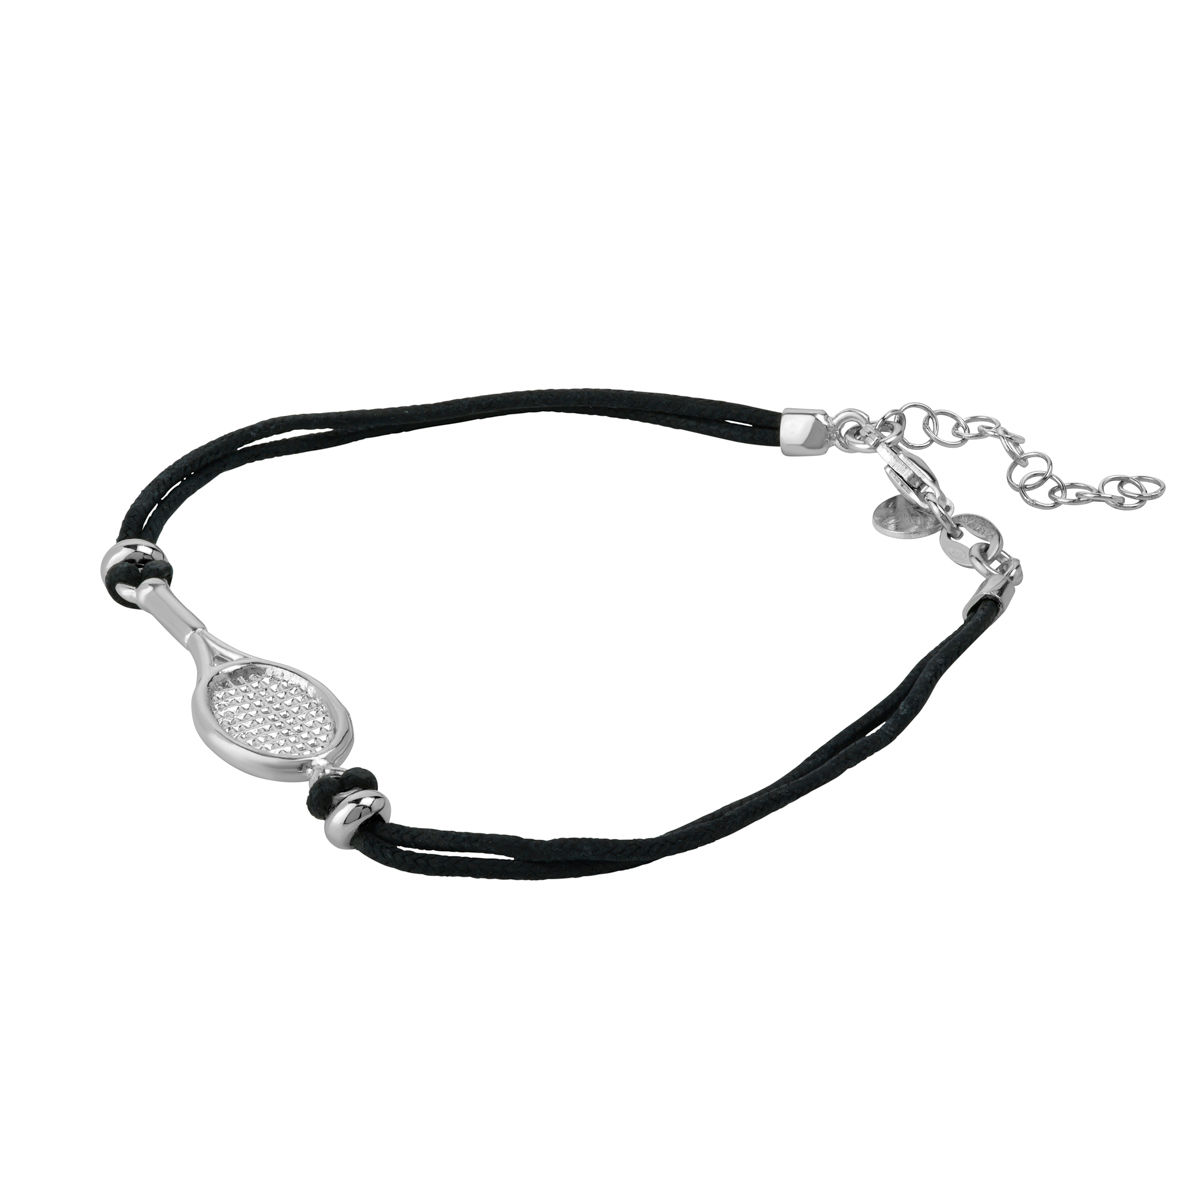 Bracelet raquette de tennis régl. 14 à 21cm, cordon noir ou bordeaux, argent 925